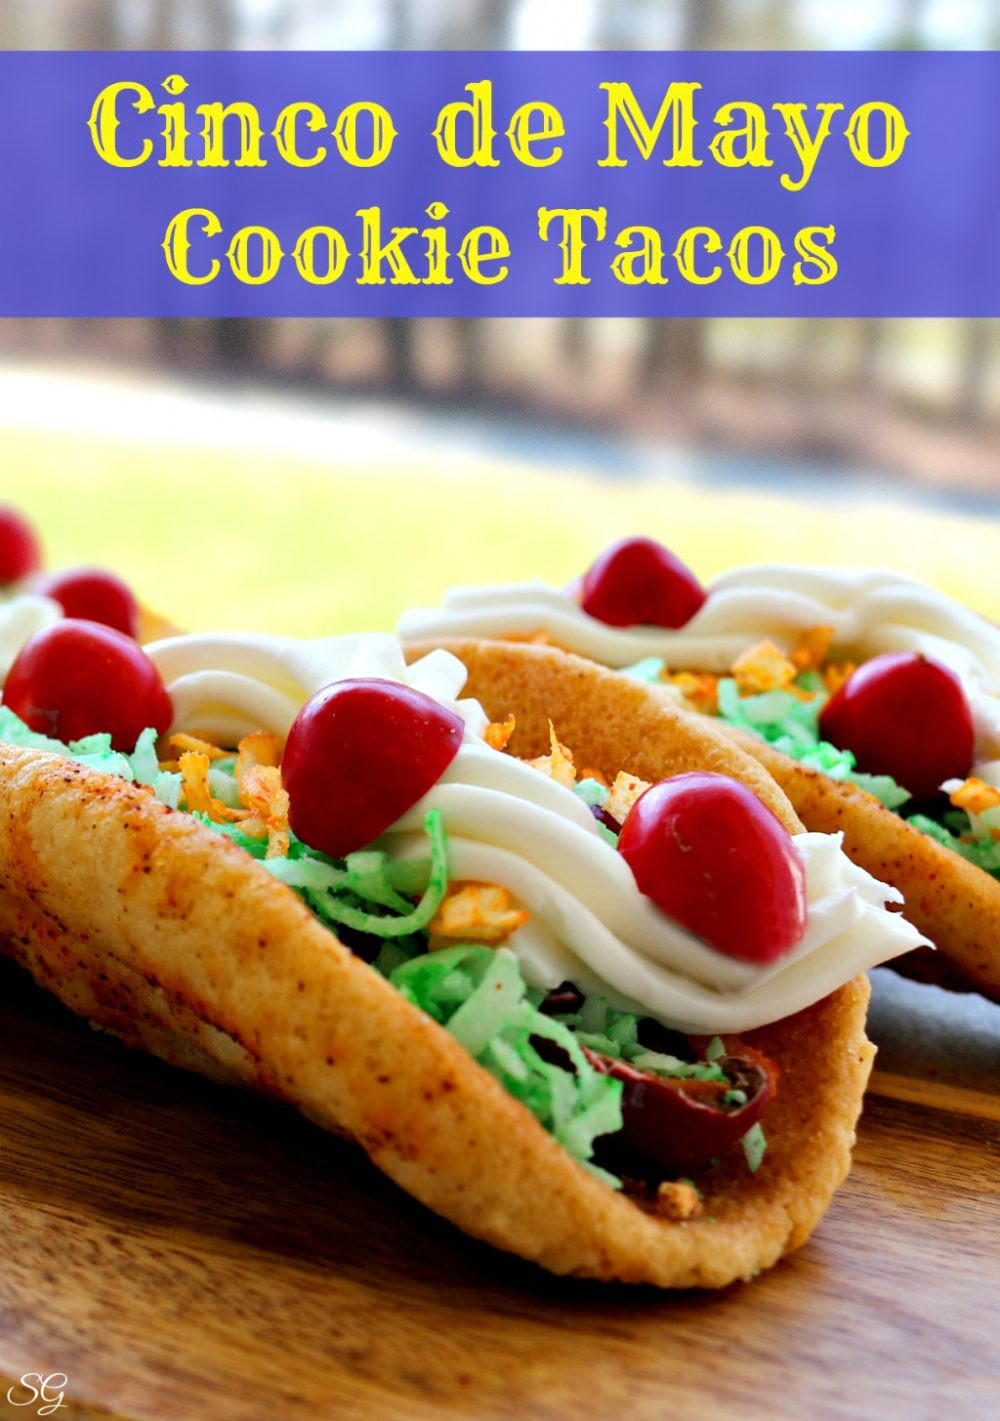 Desserts For Cinco De Mayo
 Taco Cookies for Cinco de Mayo Scrappy Geek